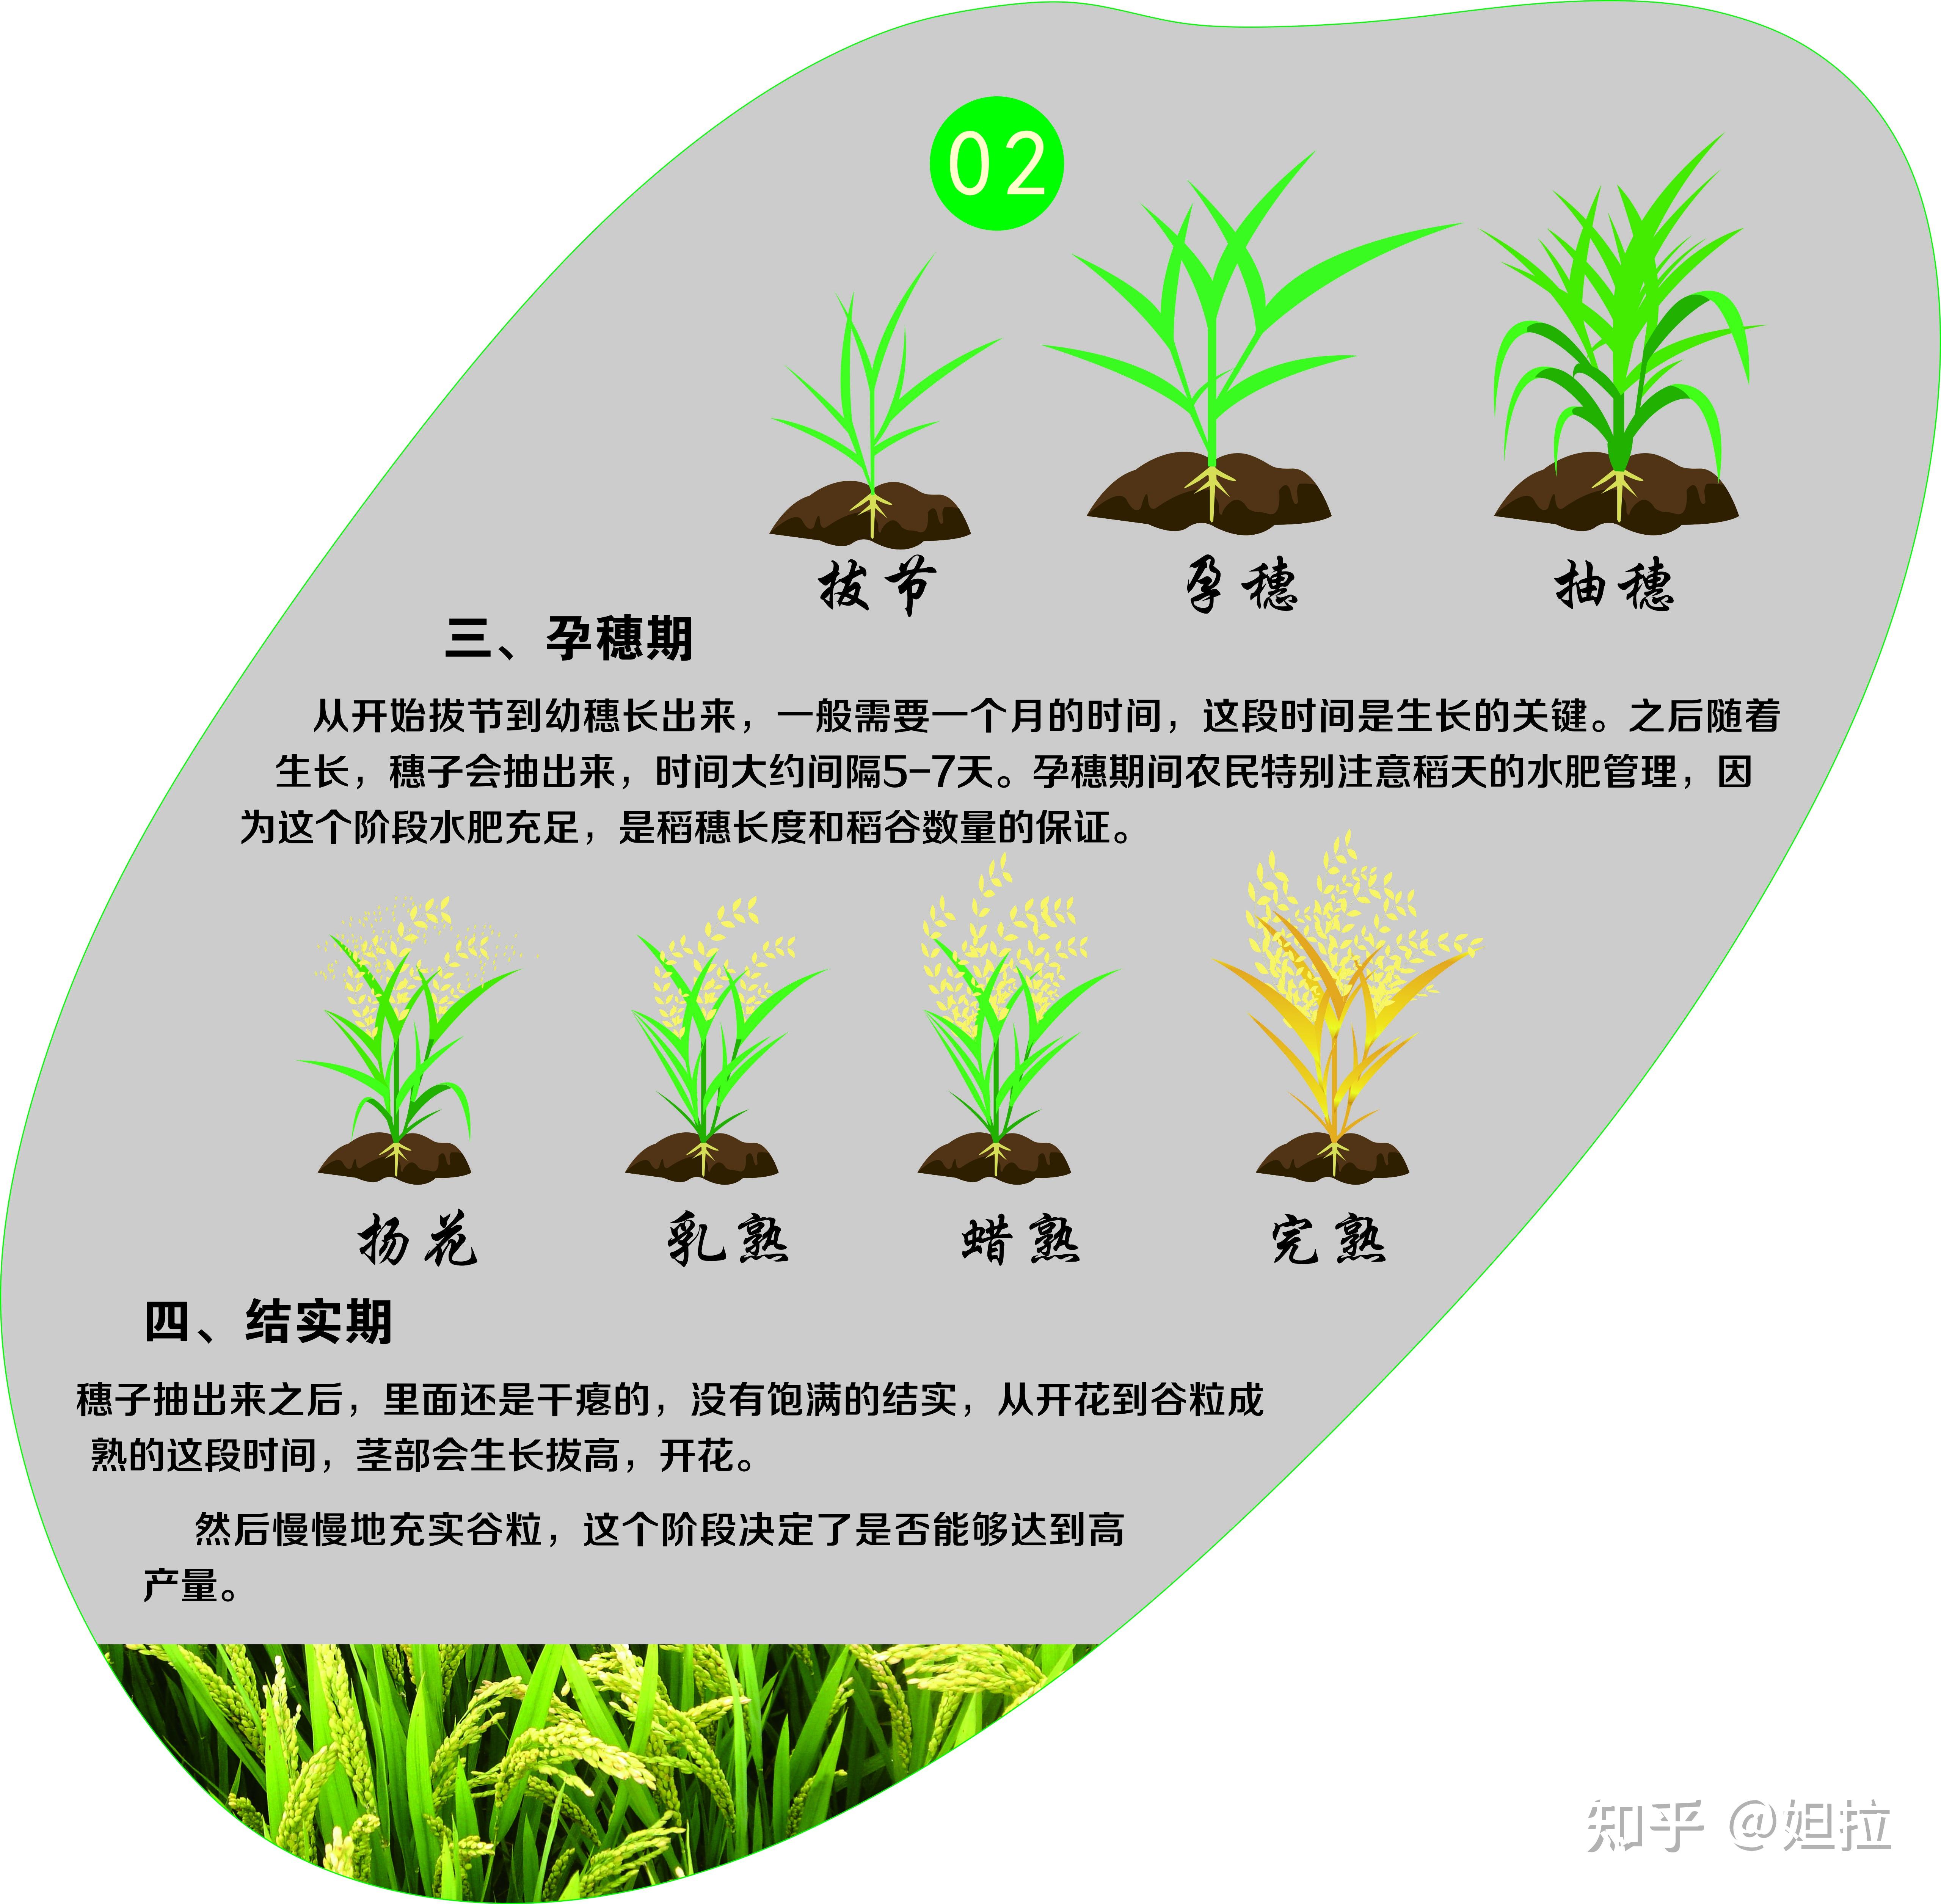 长穗,开花,结实等一系列生长发育过程,最后形成新的种子,称为水稻的